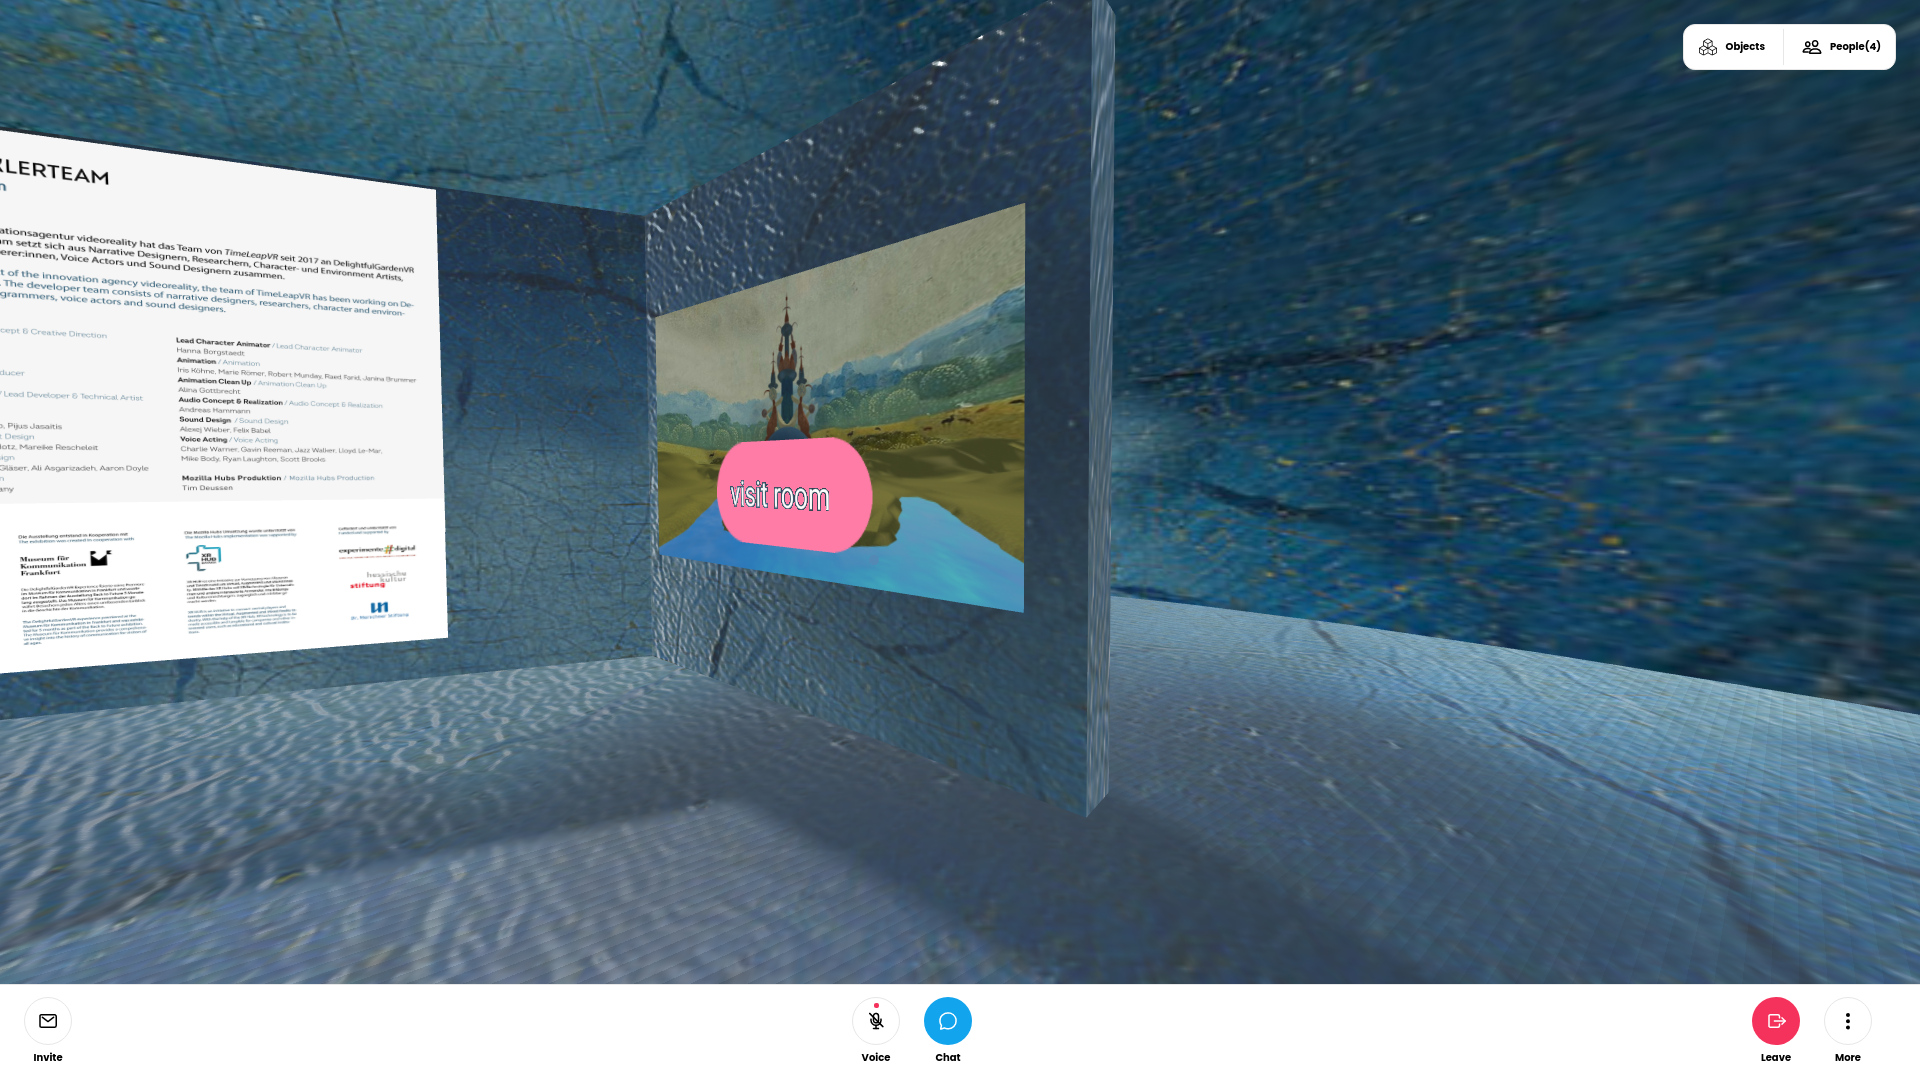 Virtuelle Ausstellungsansicht. Im blauen Raum ist das Impressum an der Wand gelistet und an der Wand daneben ein Bild des Turmes im Garten der Lüste mit der Beschriftung "visit room"